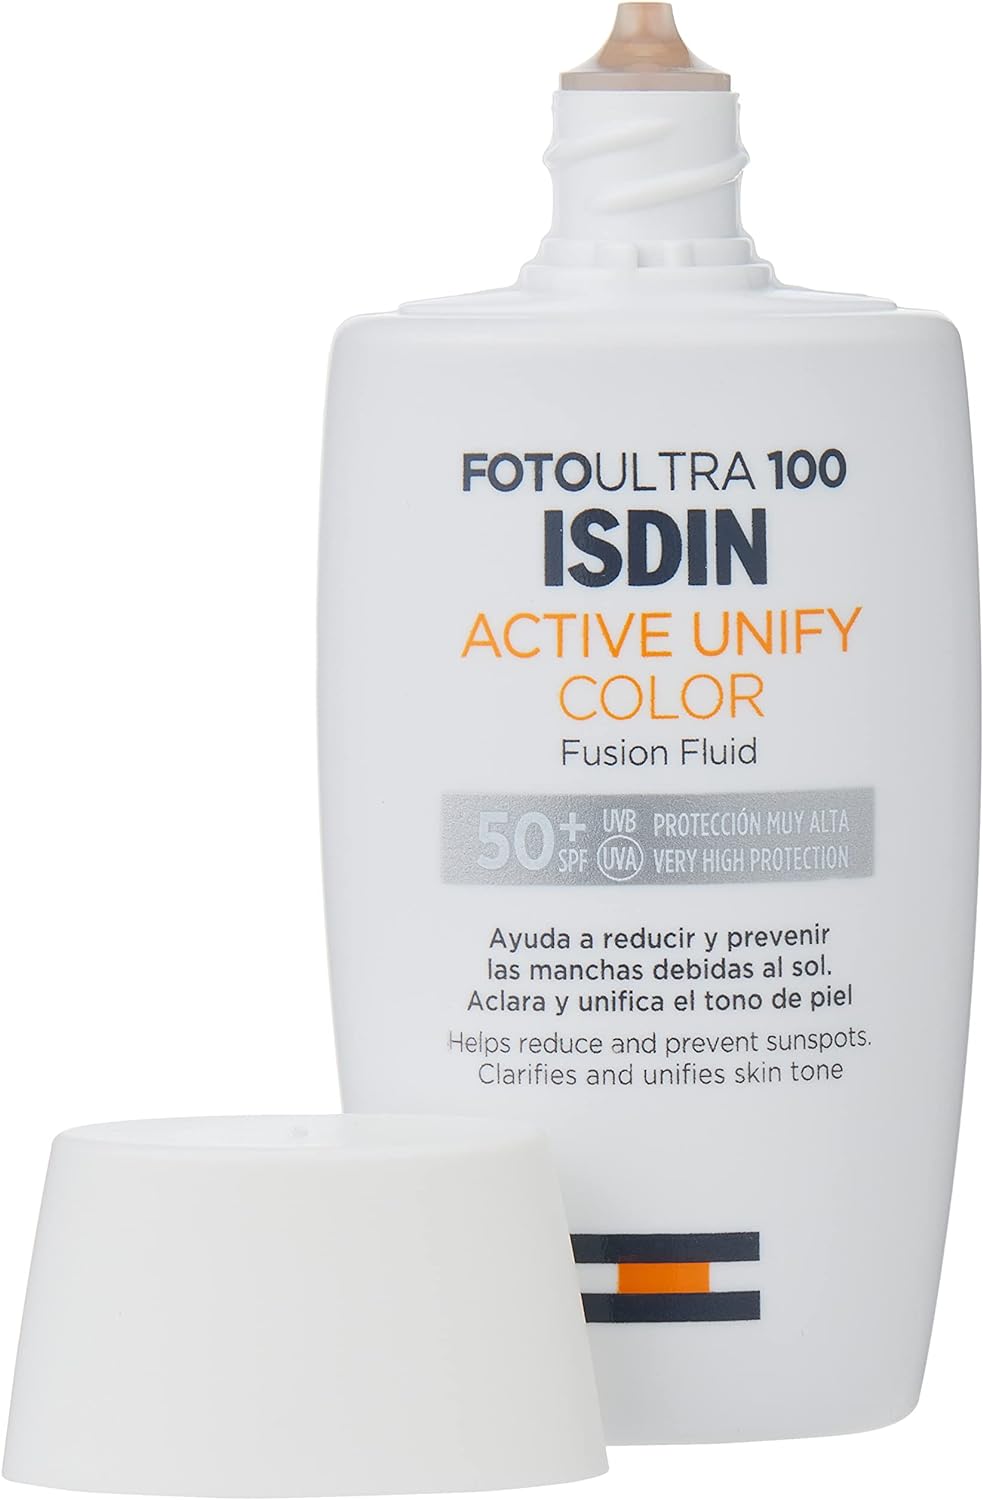 فلوئید ضدآفتاب ایزدین مدل Isdin Foto Ultra 100 Active - ارسال 25 الی 30 روز کاری